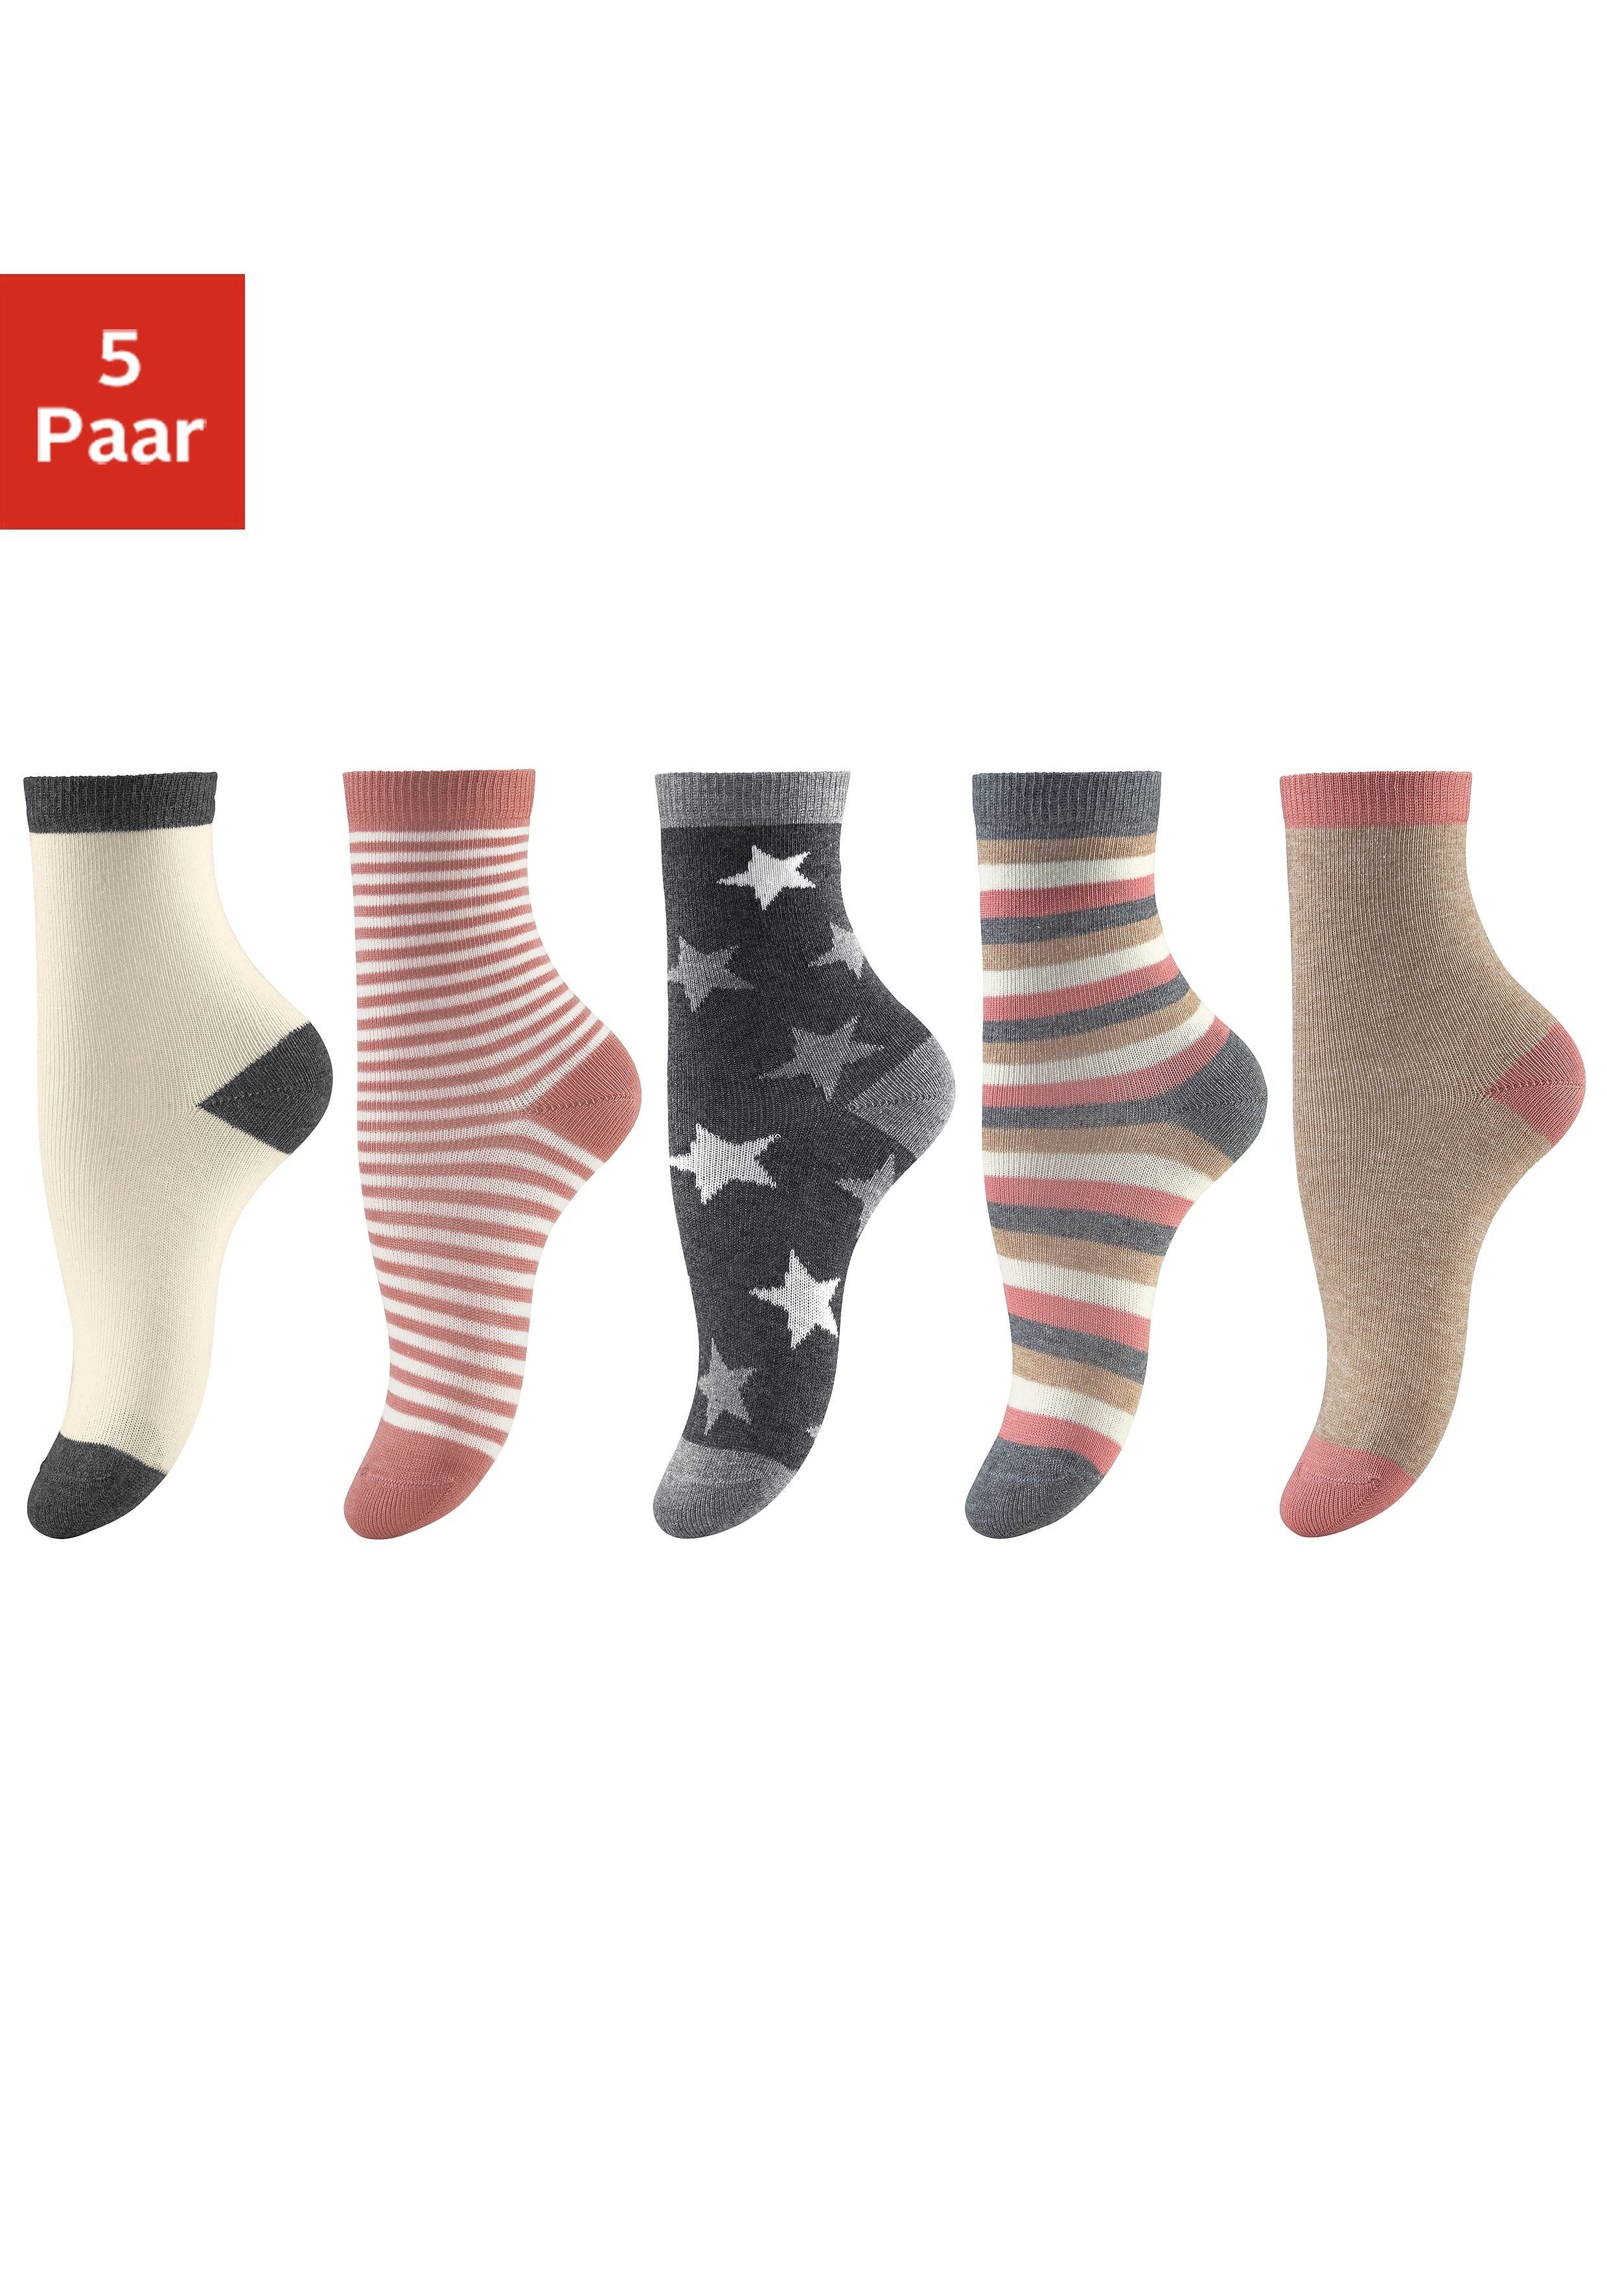 Designs (5-Paar) Socken in verschiedenen 5